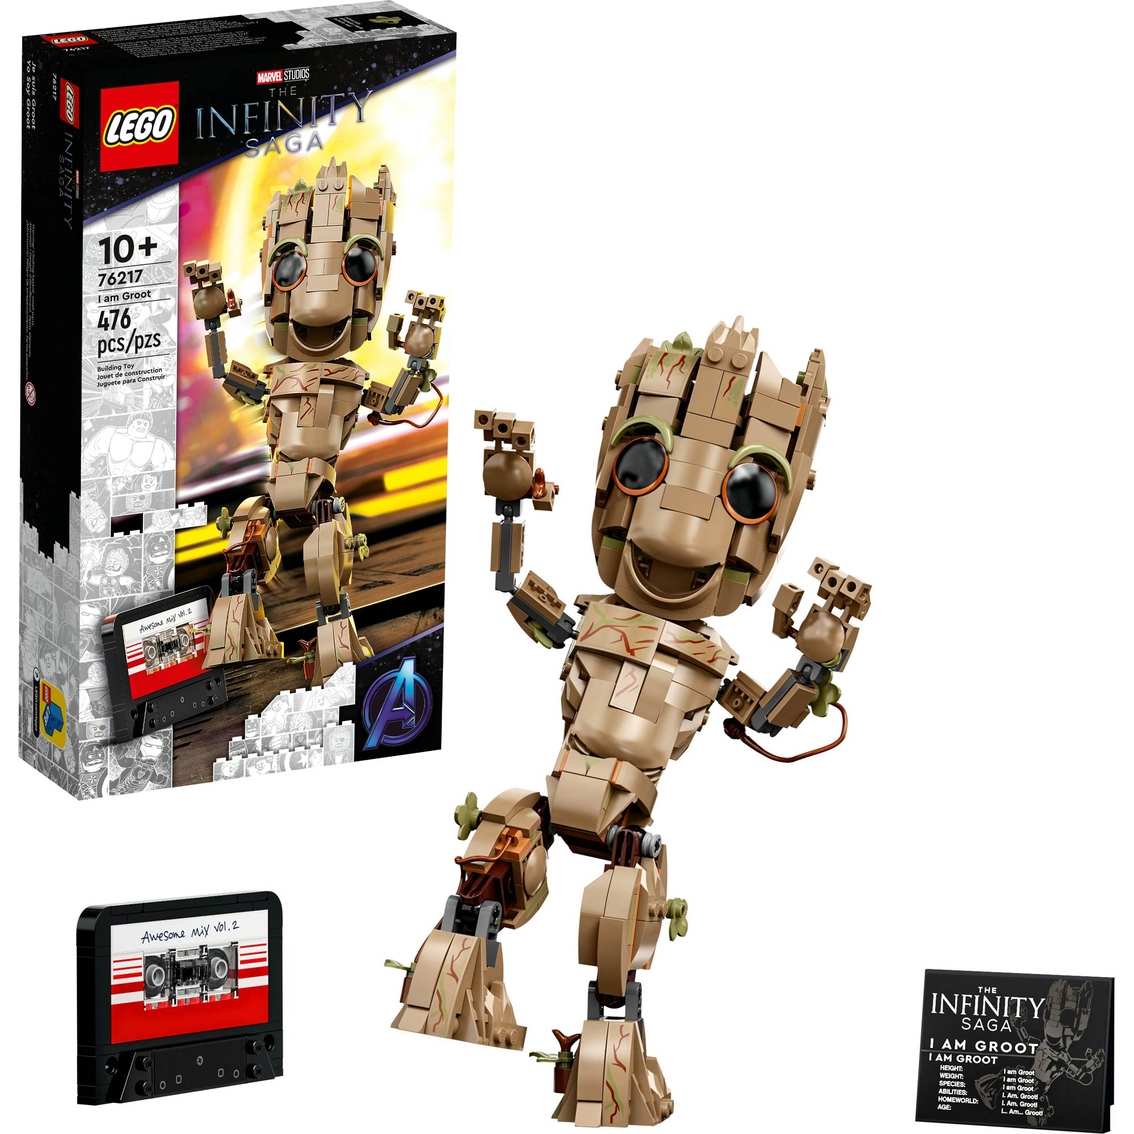 LEGO Marvel I am Groot 76217 - Image 3 of 3